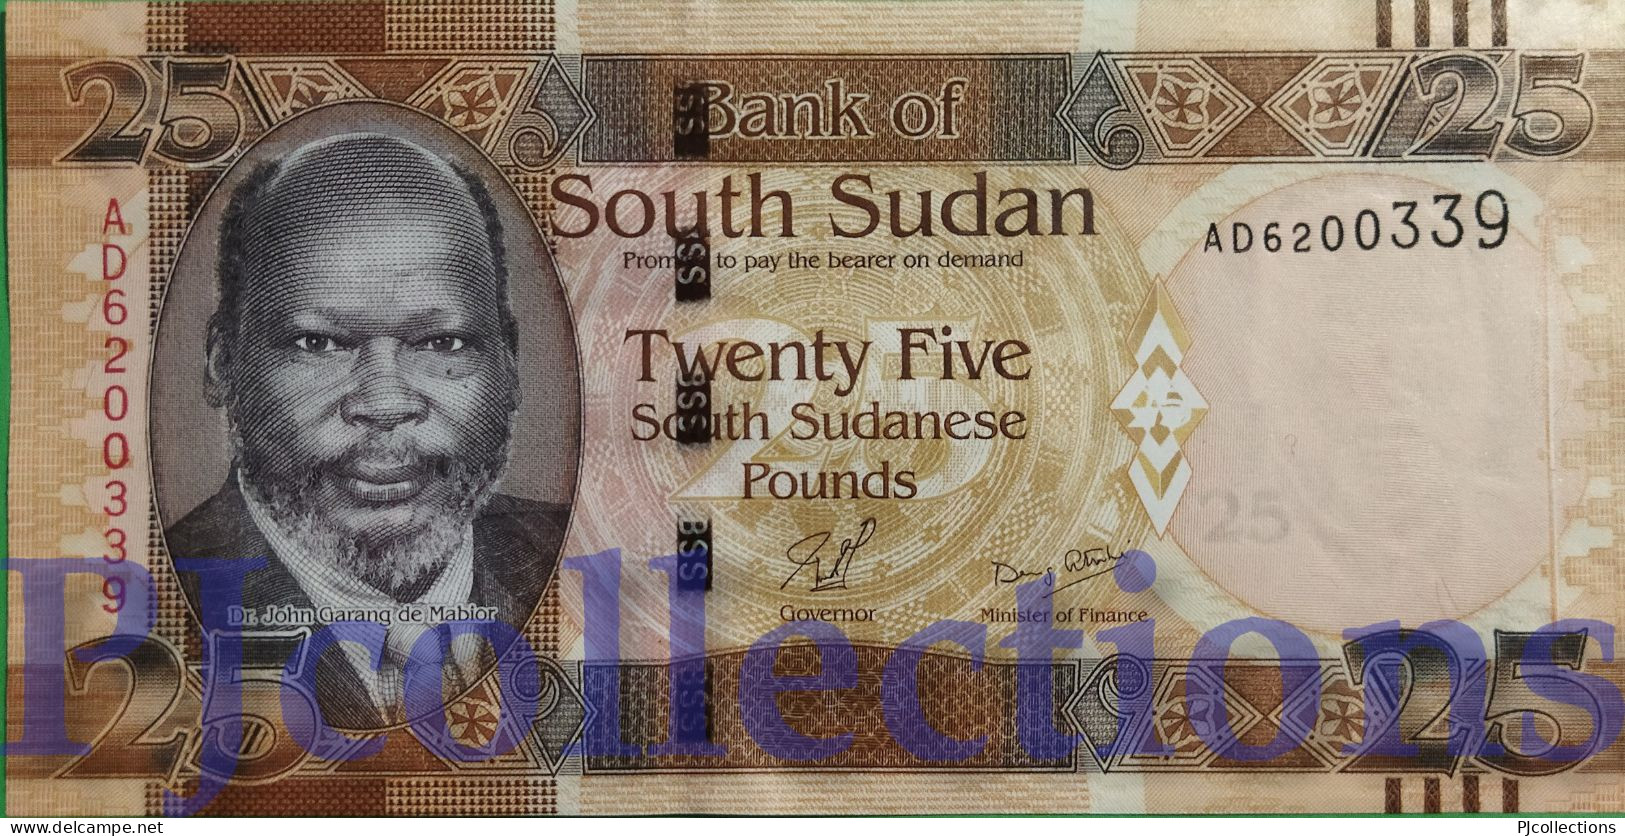 SOUTH SUDAN 25 POUNDS 2011 PICK 8 UNC - Soudan Du Sud